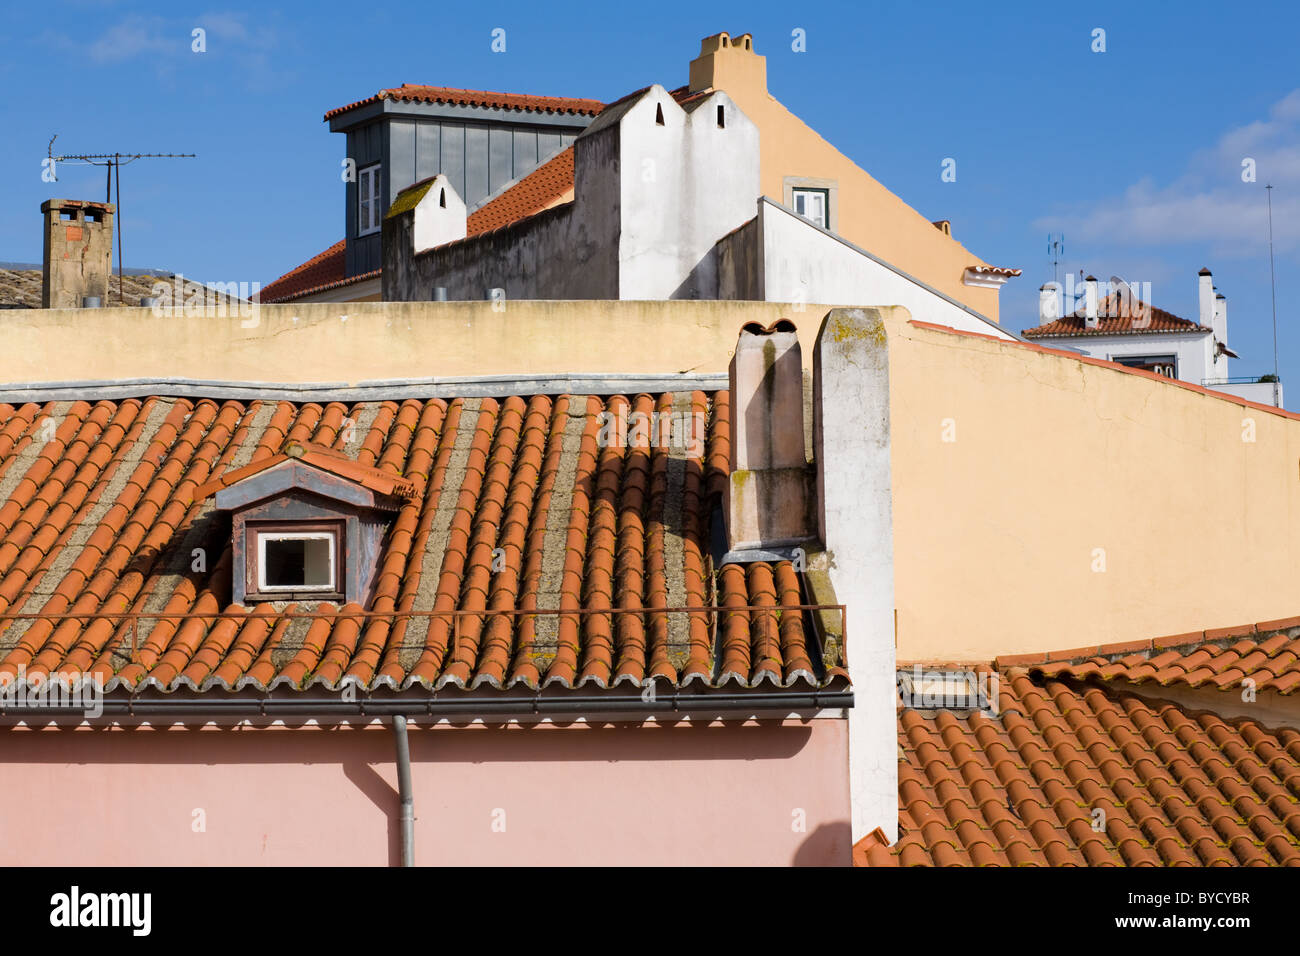 Les toits en terre cuite et des murs pastel et des cheminées, Alfama, Lisbonne, Portugal Banque D'Images